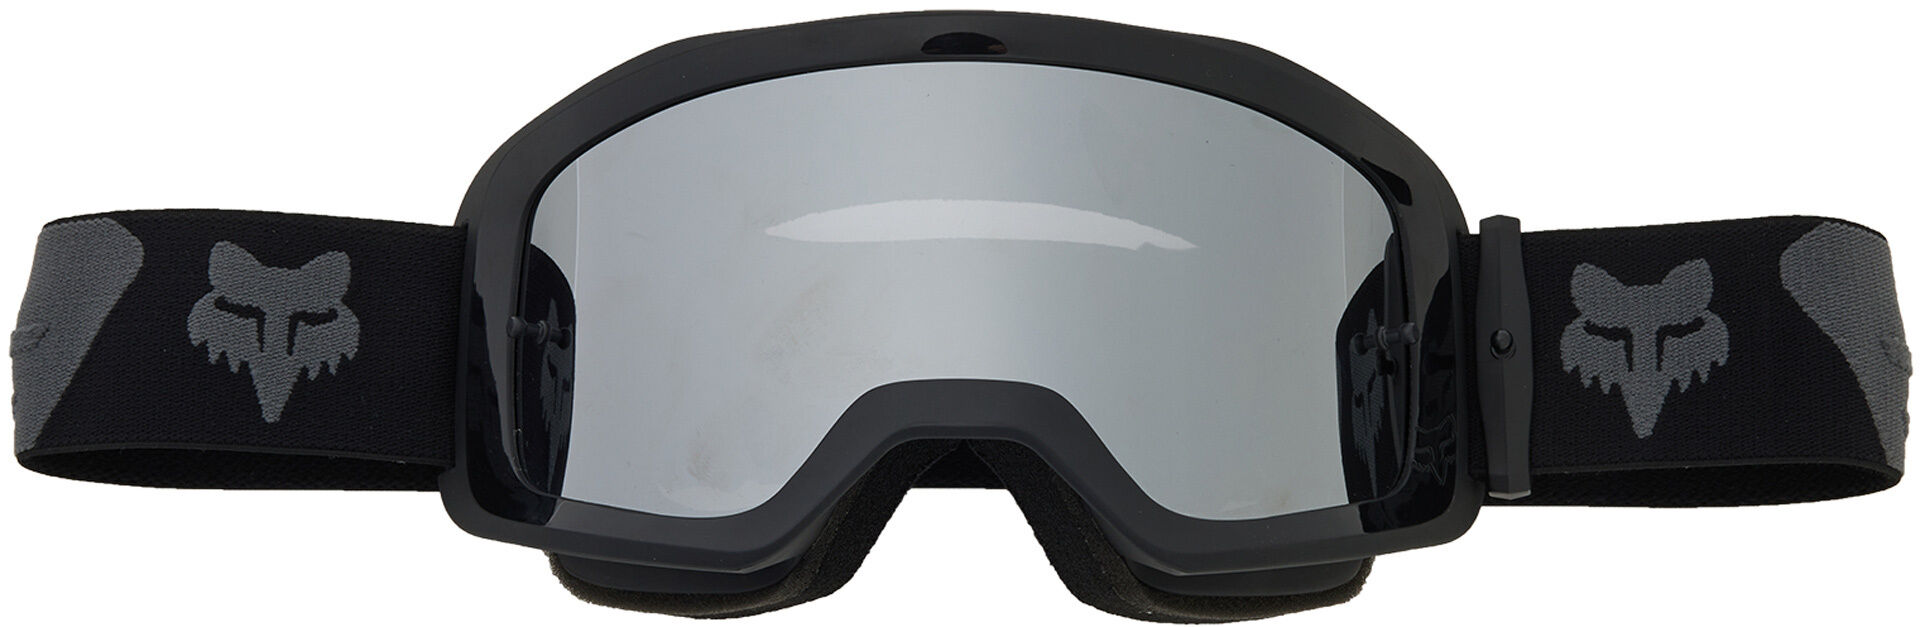 Fox Main Core Spark Gafas de motocross - Negro Gris (un tamaño)